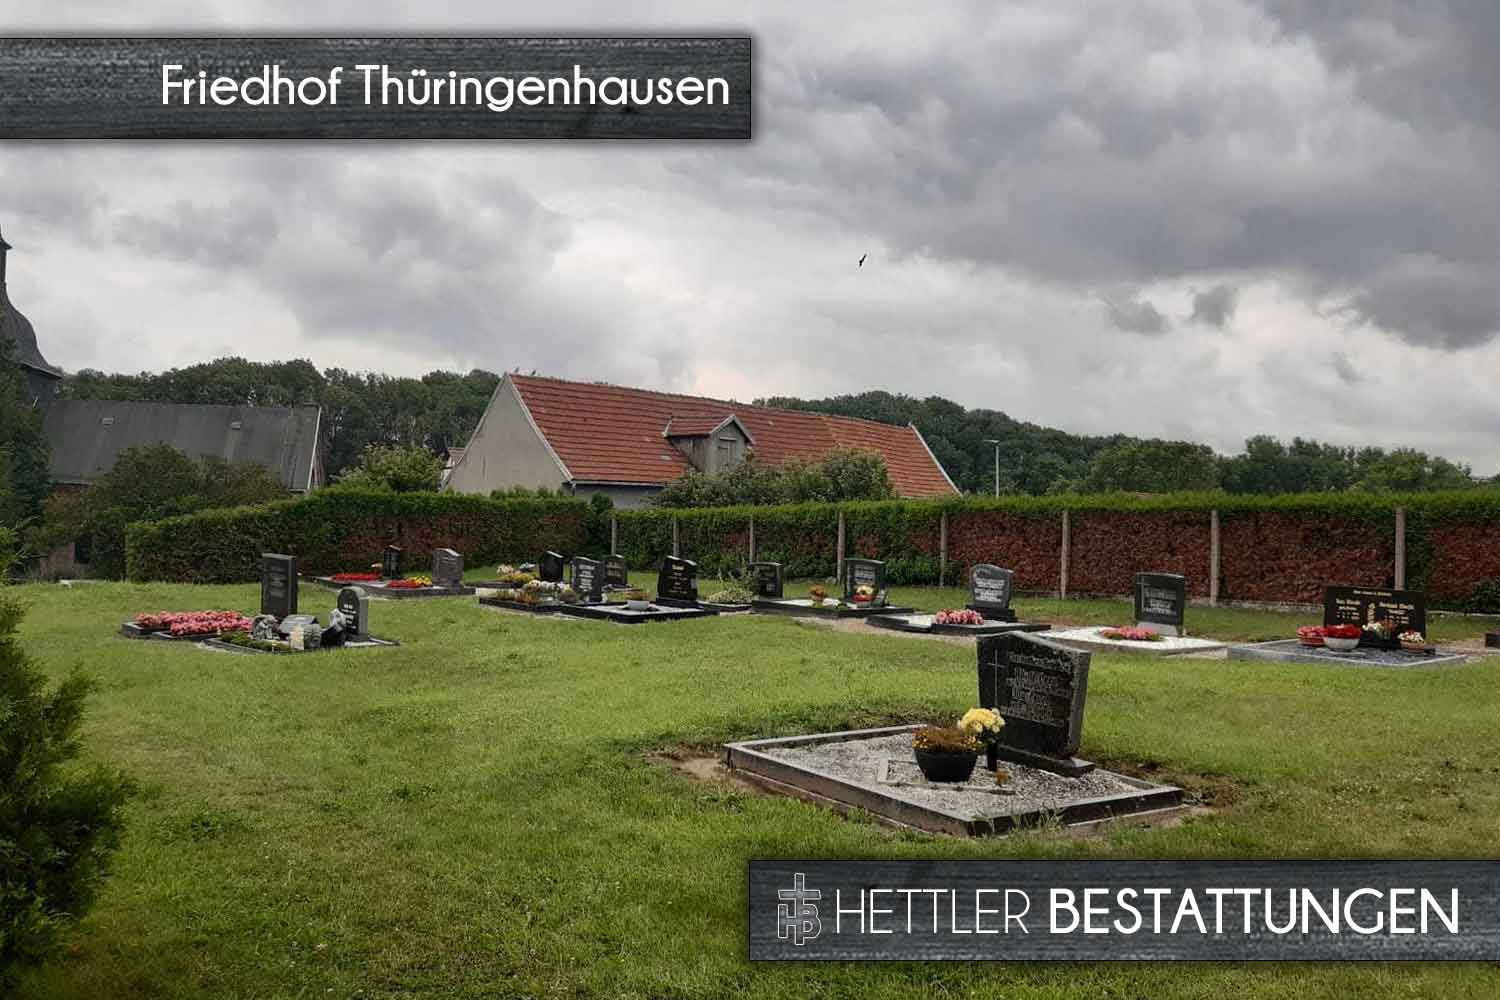 Friedhof in Thüringenhausen. Ihr Ort des Abschieds mit Hettler Bestattungen.